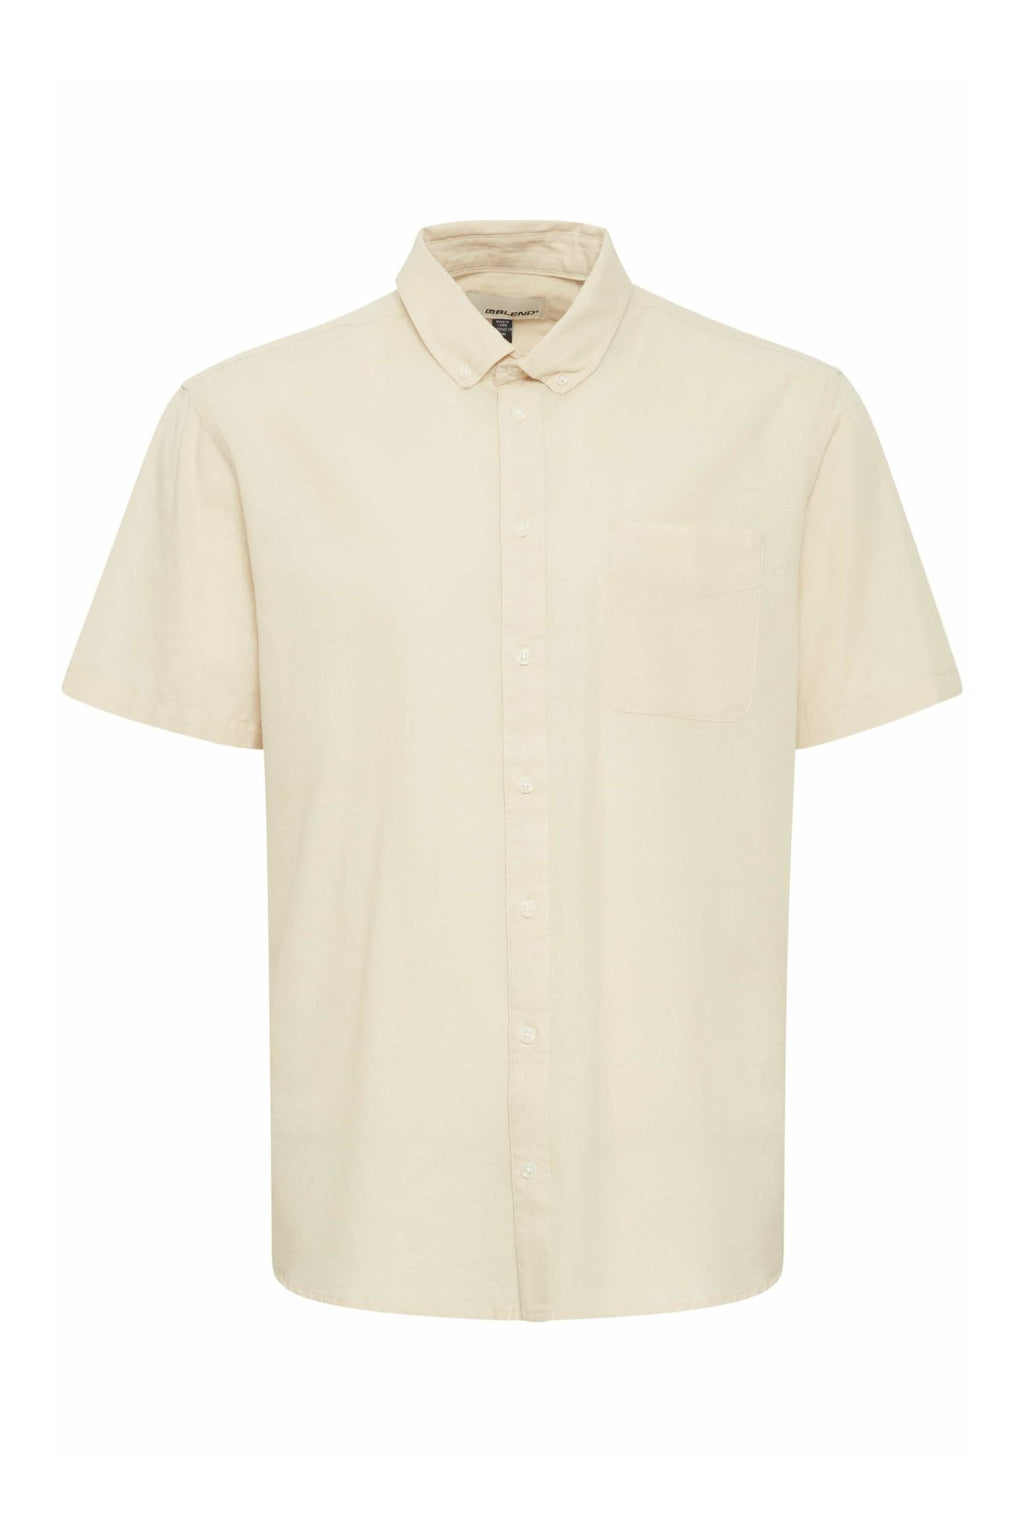 Ľanová košeľa s krátkymi rukávmi - Oyster Gray